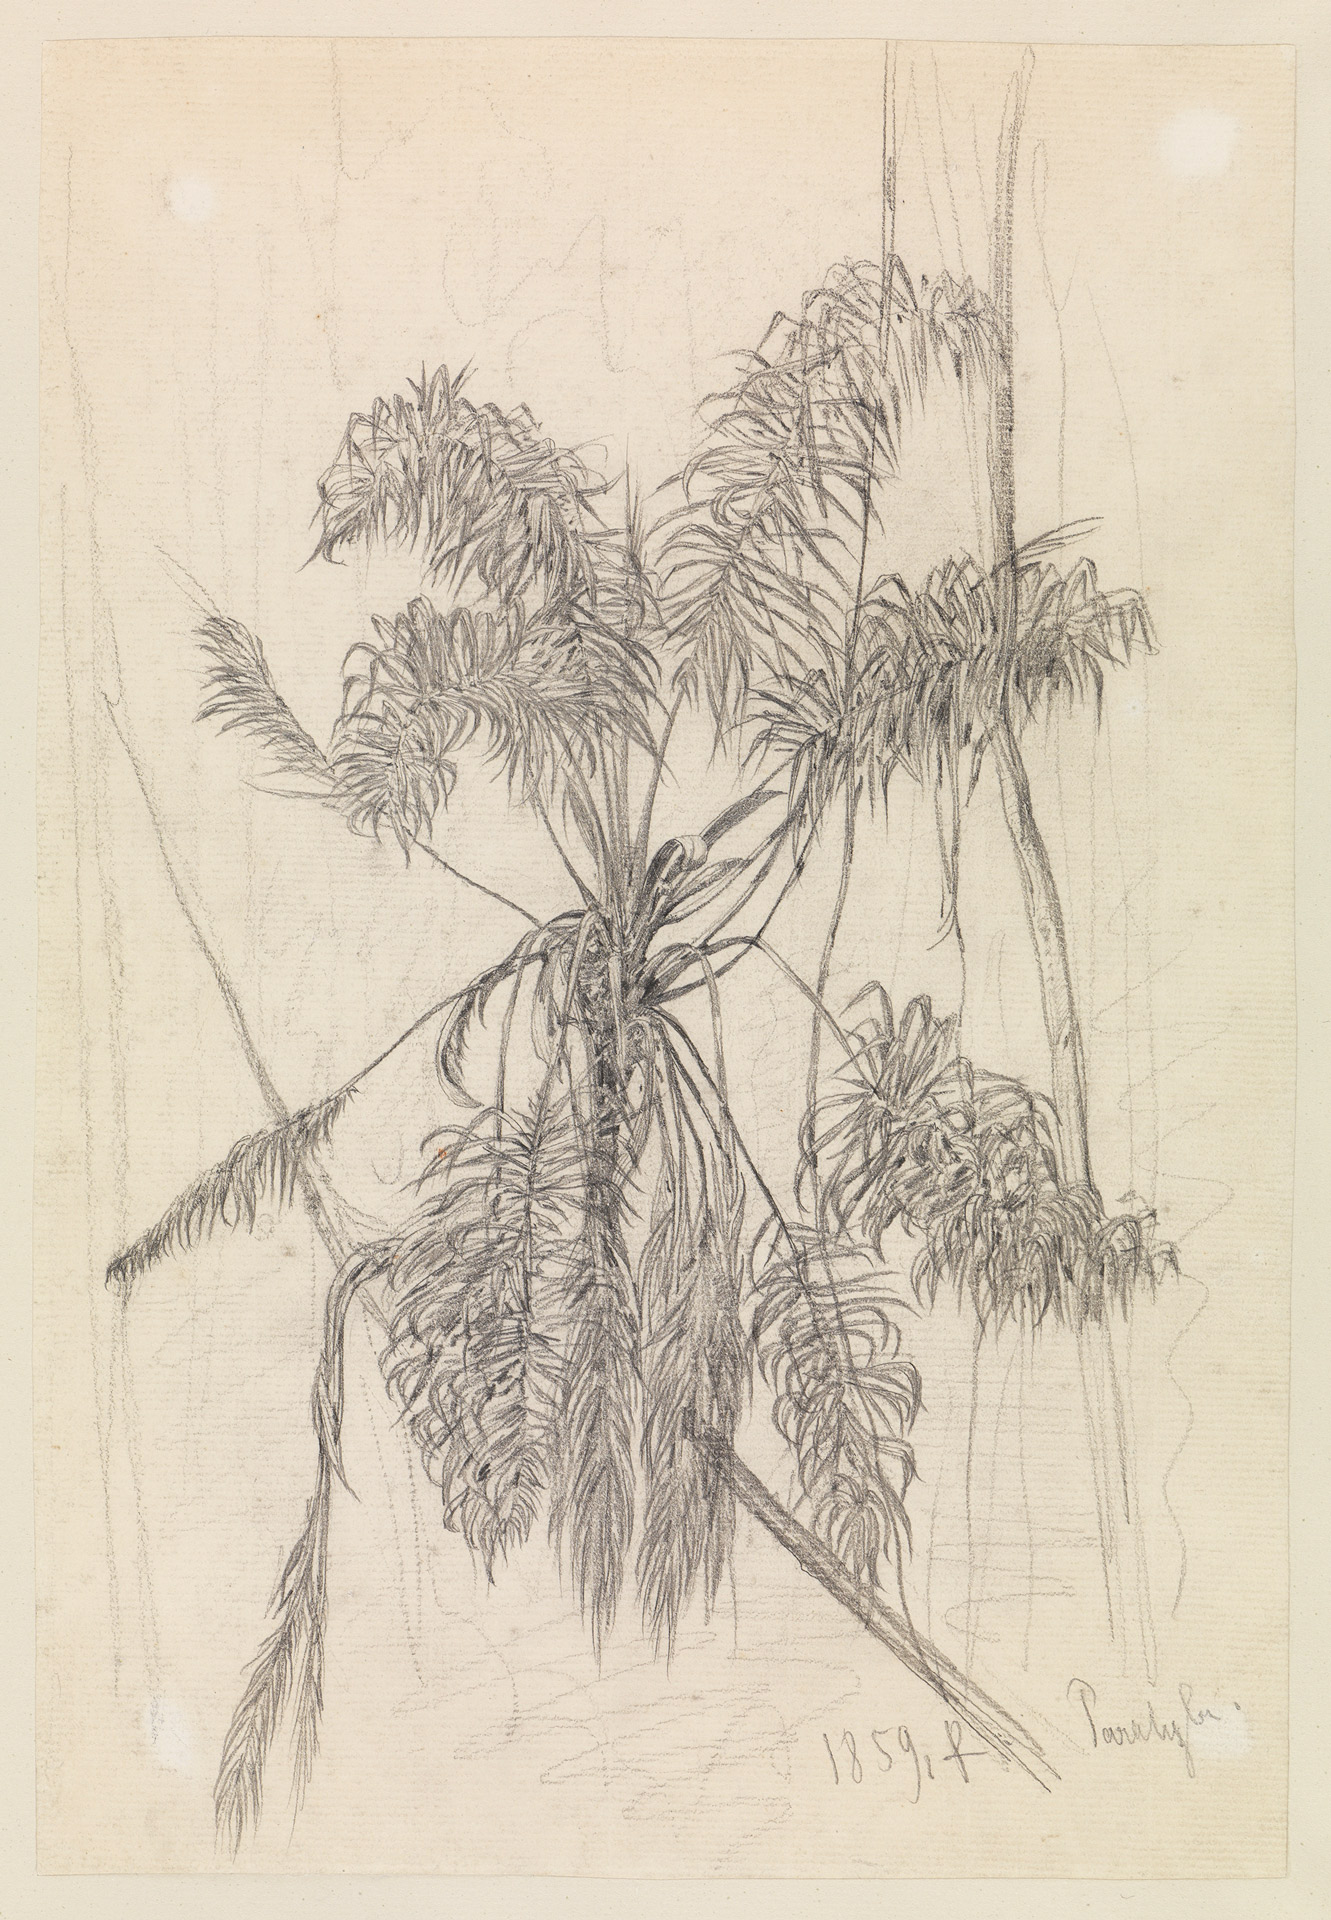 Abbildung der Zeichnung "Palmenstudie" von Ferdinand Keller aus dem Jahr 1859